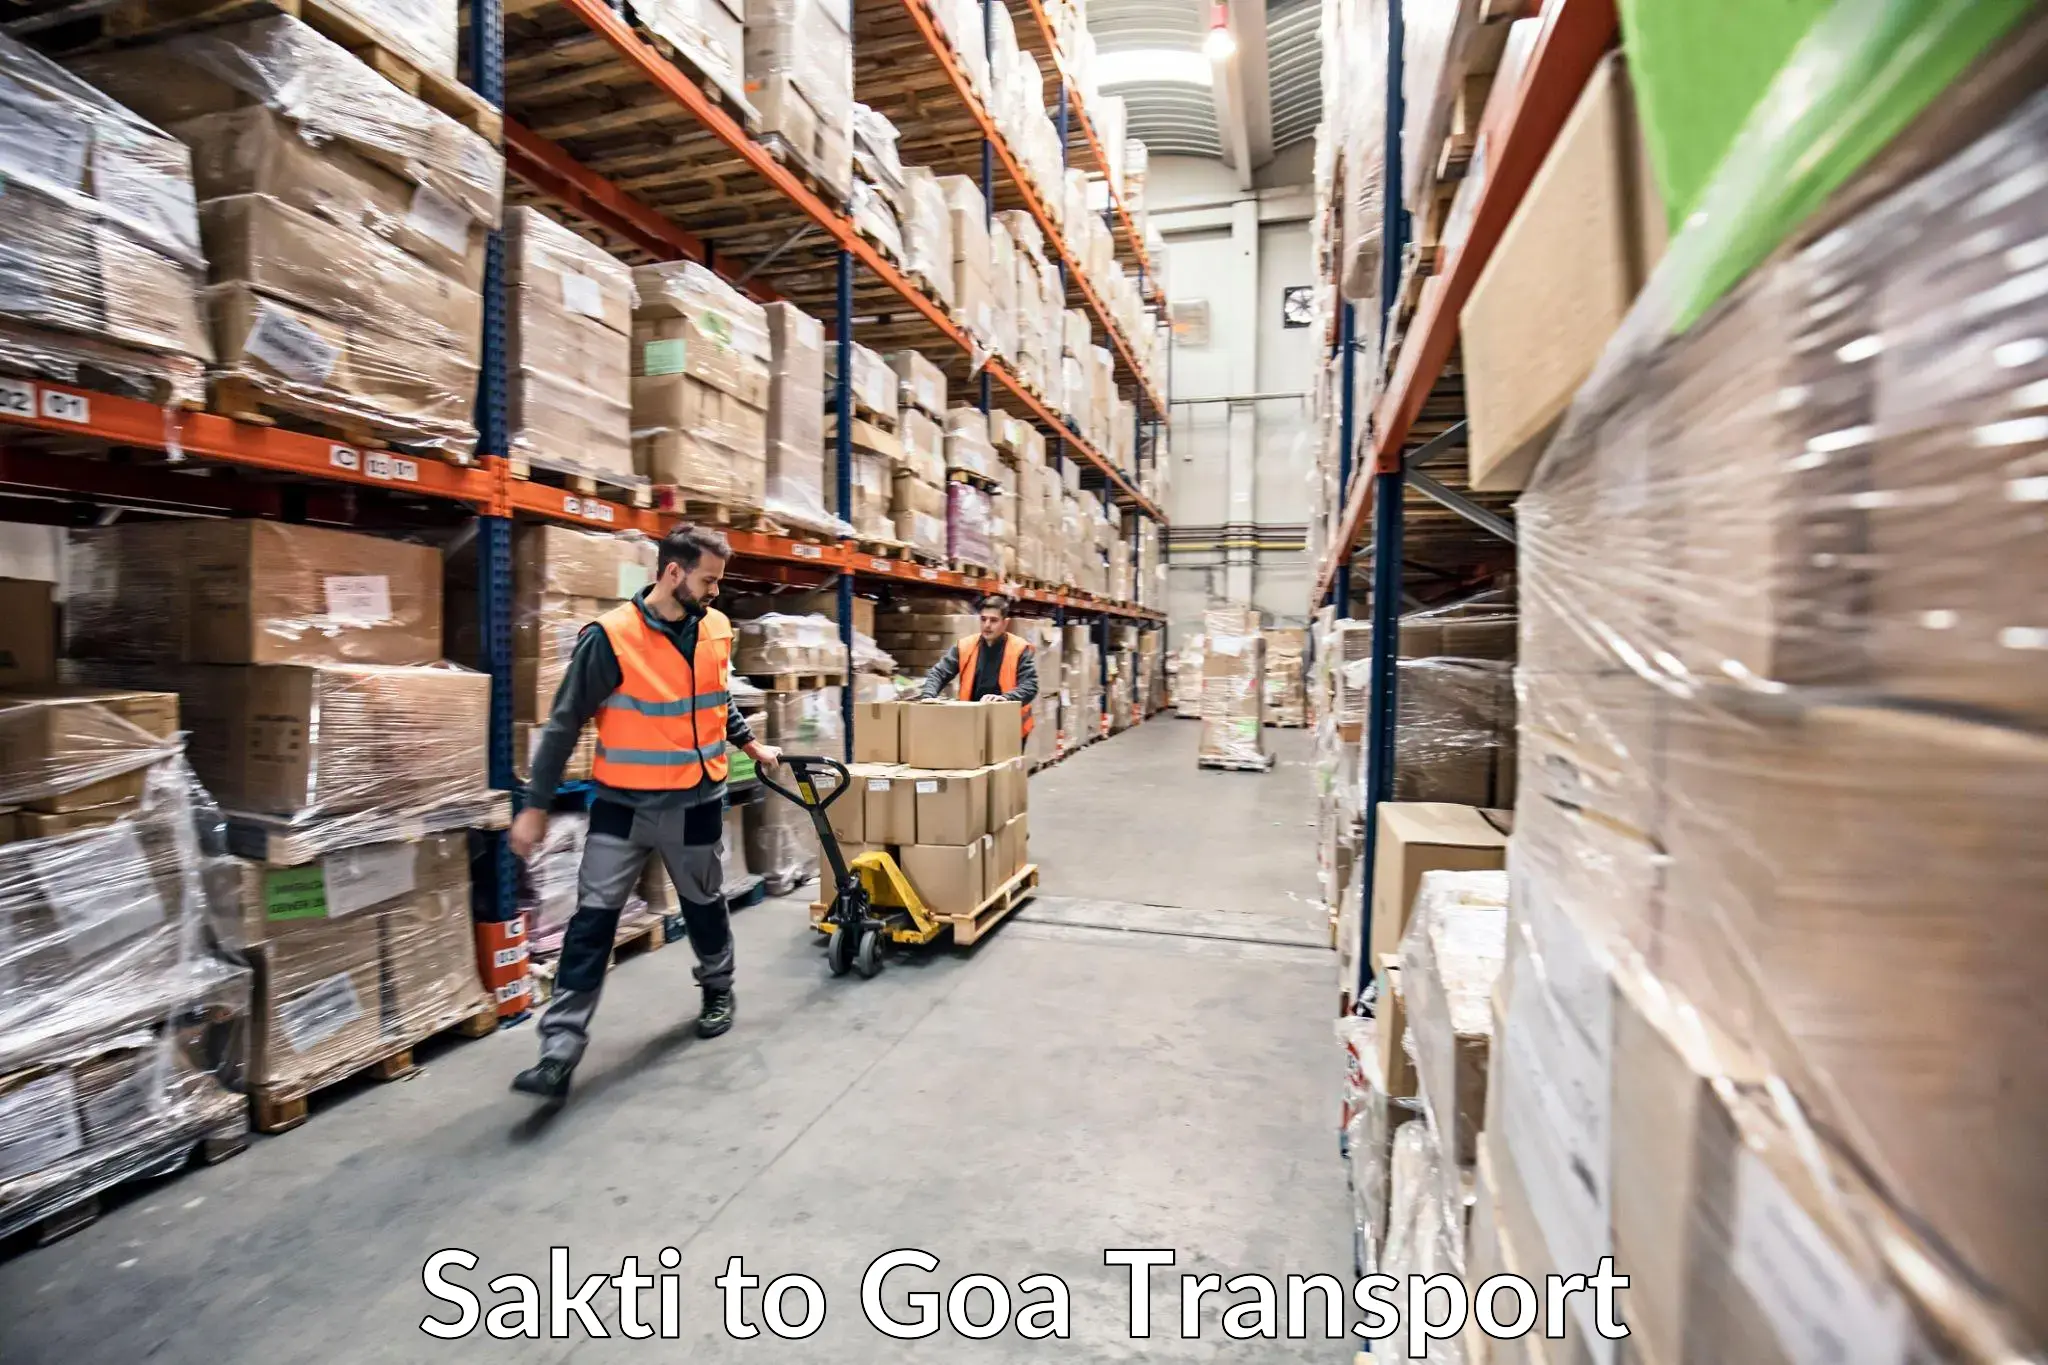 Transport in sharing in Sakti to Goa University